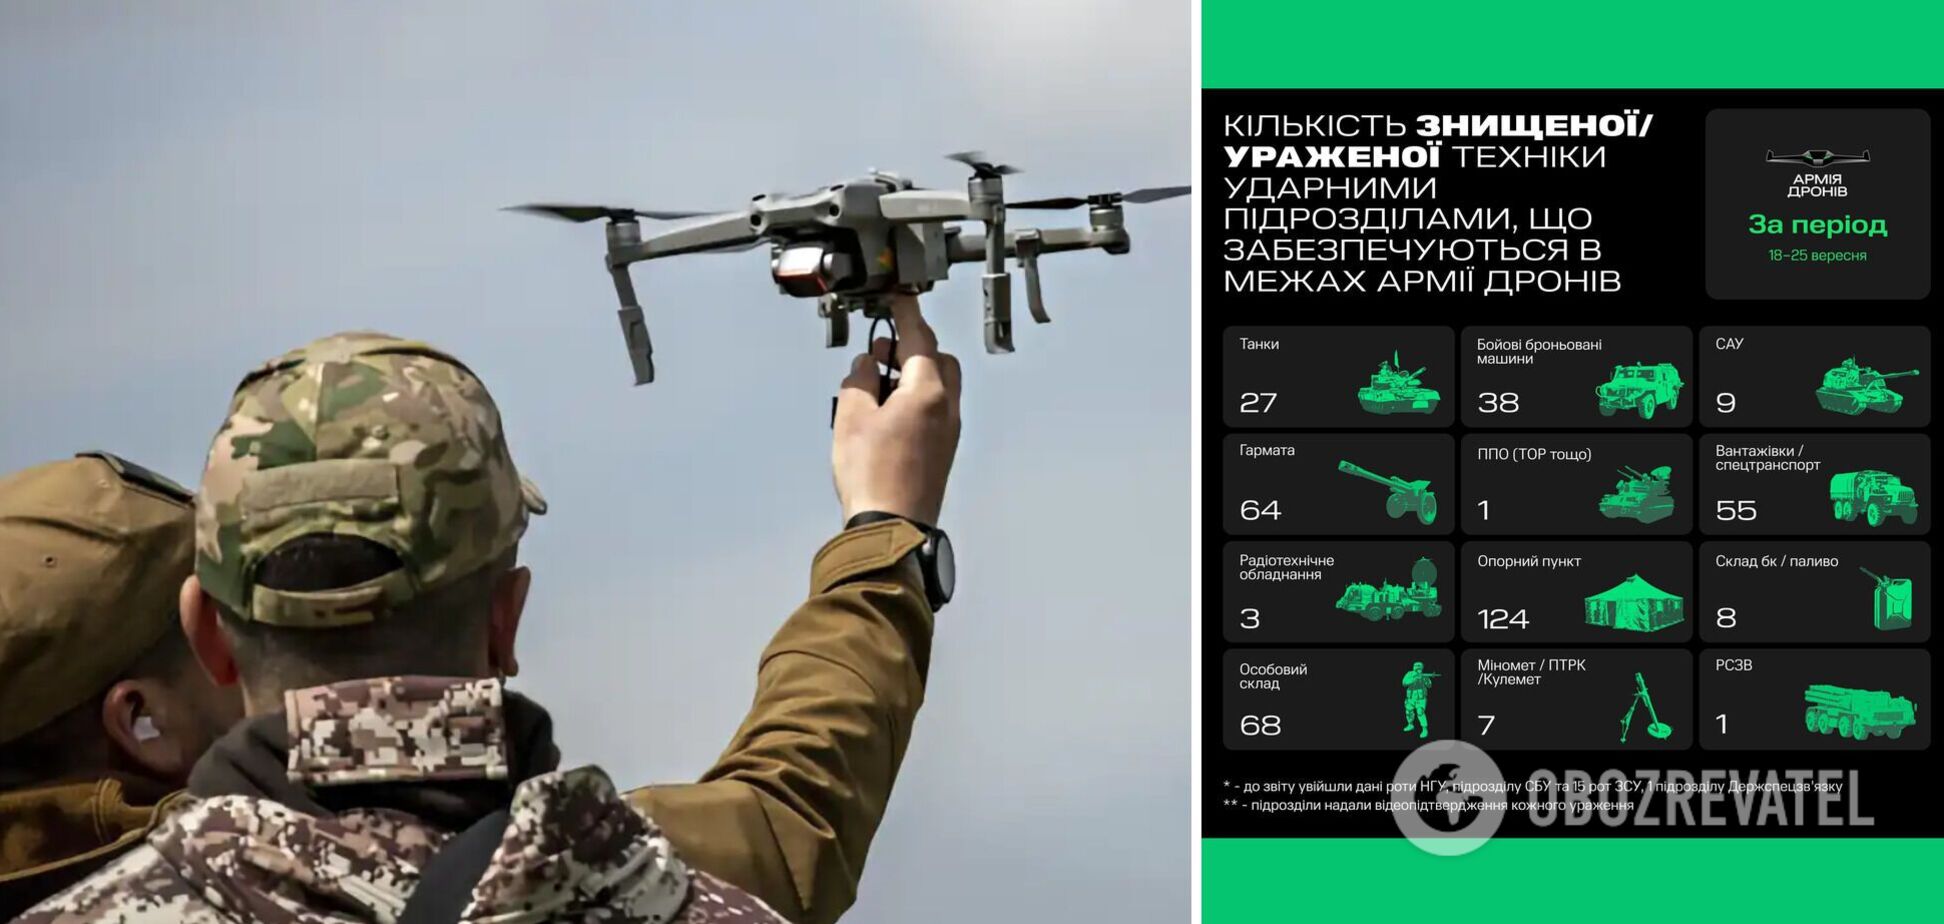 'Армия дронов' обновила рекорд по количеству уничтоженной техники РФ за неделю: озвучены цифры